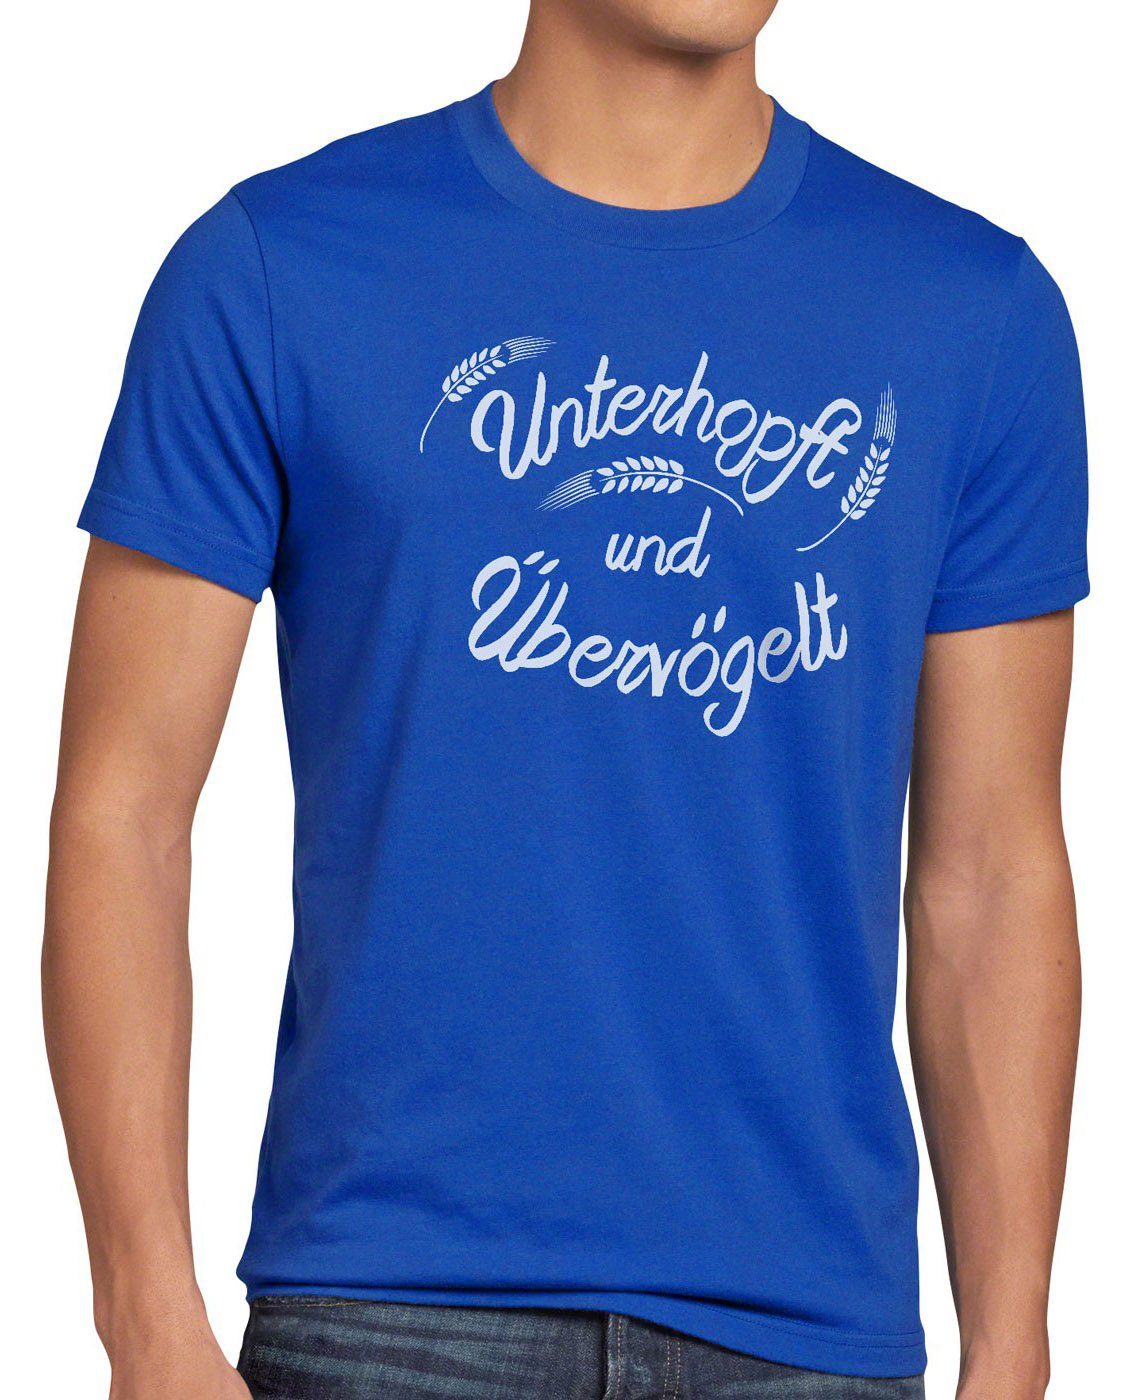 Print-Shirt Malz blau Shirt Funshirt Spruch T-Shirt style3 Übervögelt Bier Herren Fun Kult Unterhopft